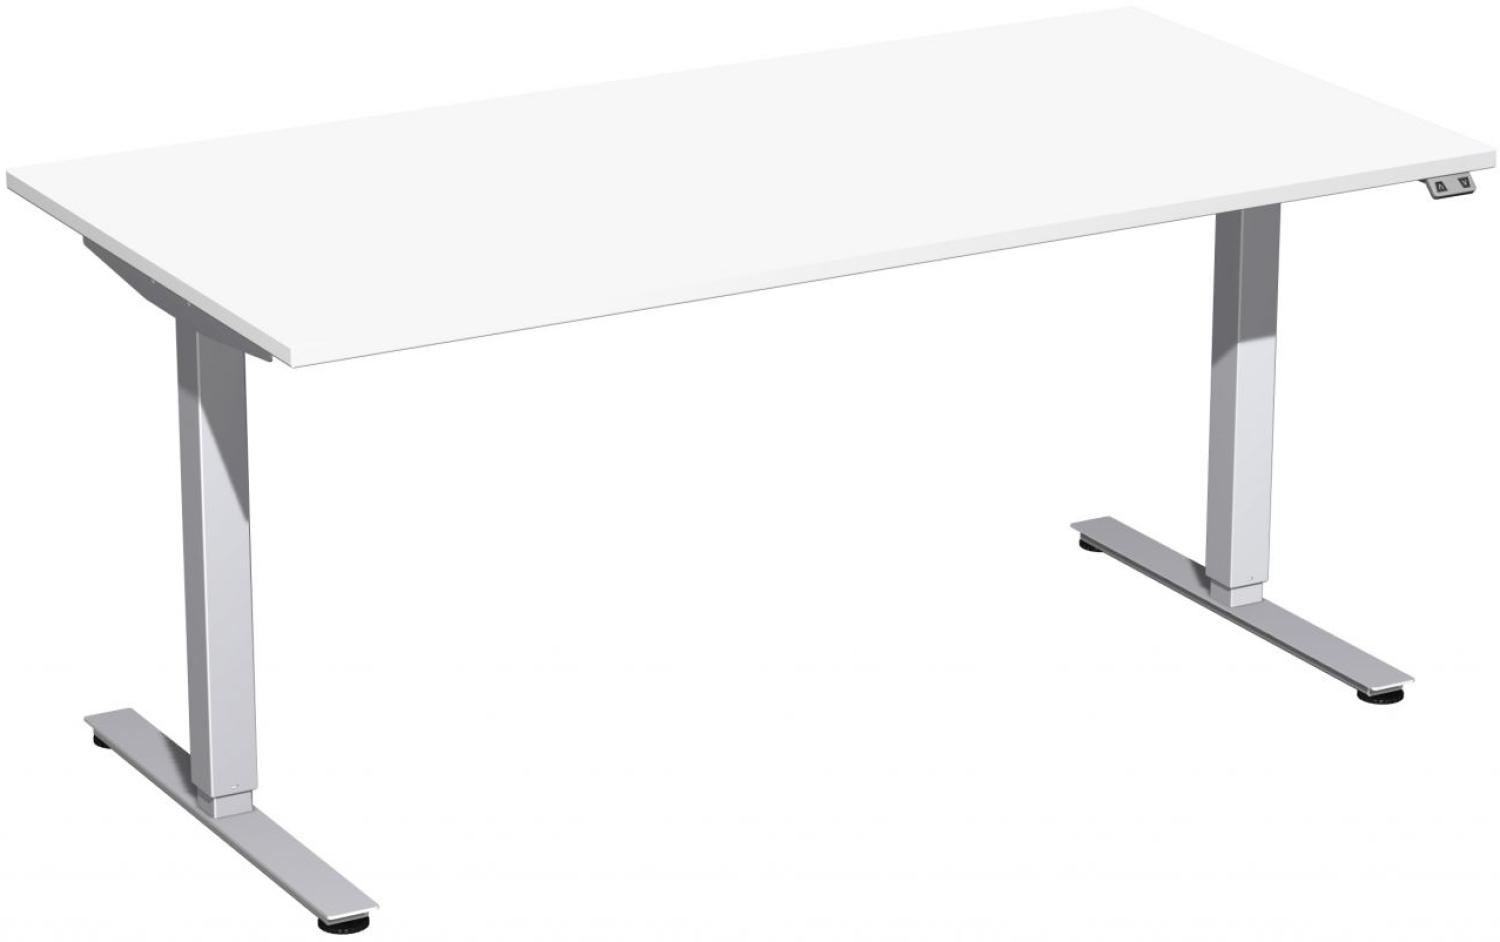 Elektro-Hubtisch 'Smart', höhenverstellbar, 160x80x70-120cm, gerade, Weiß / Silber Bild 1